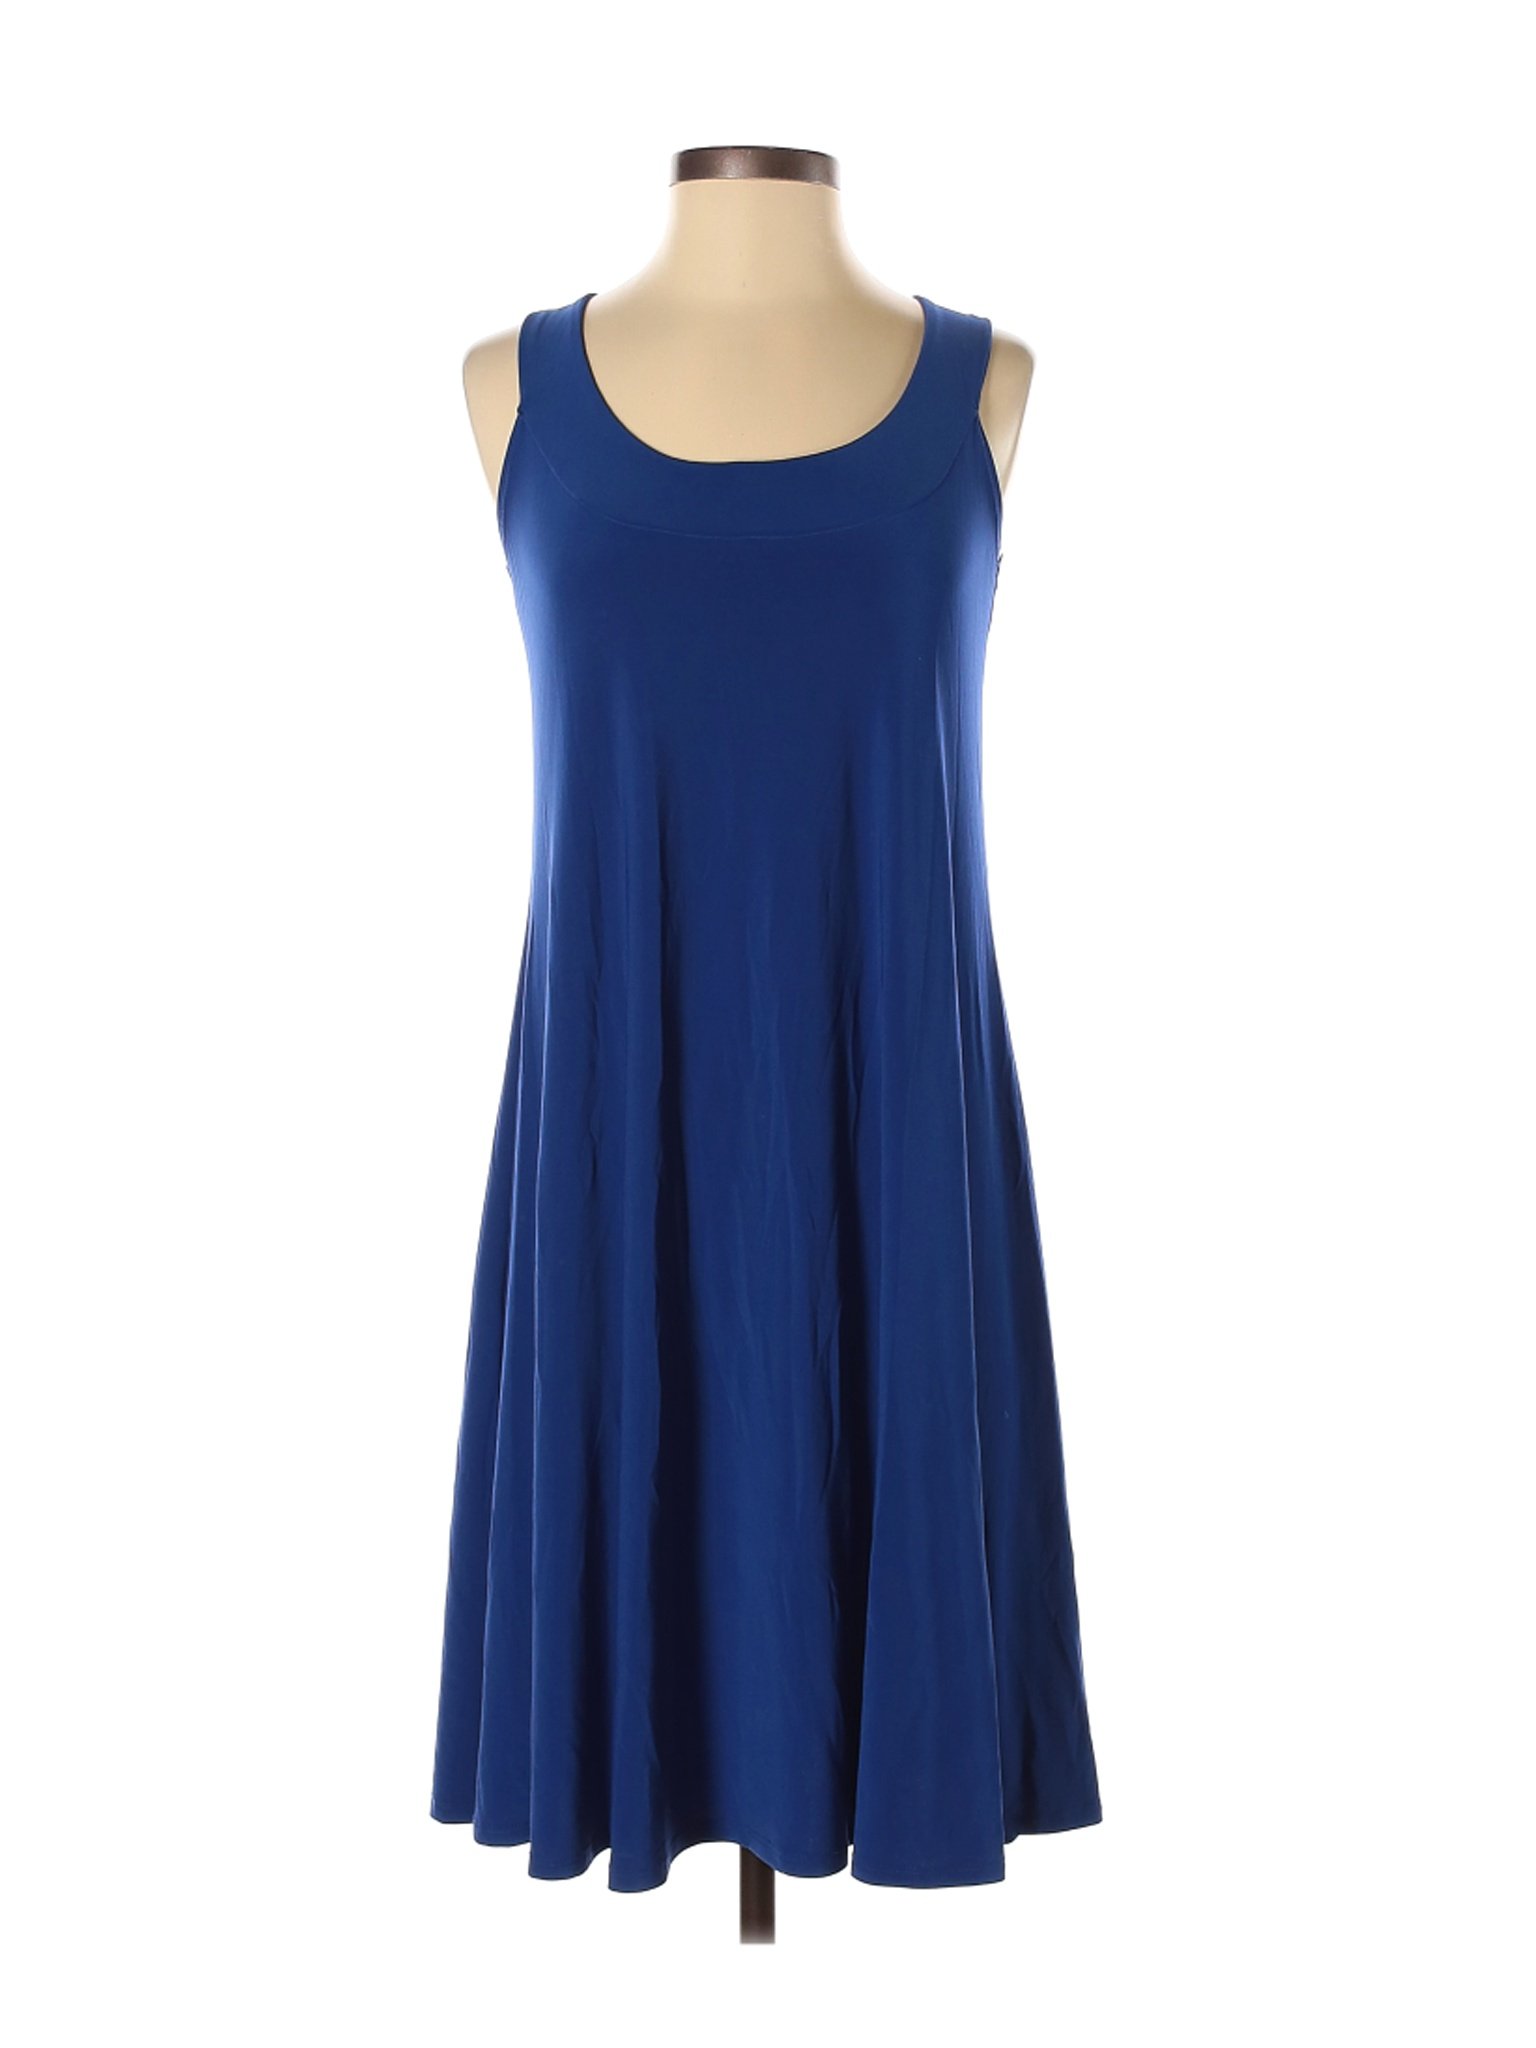 Ellen Parker Women Blue Casual Dress S | eBay